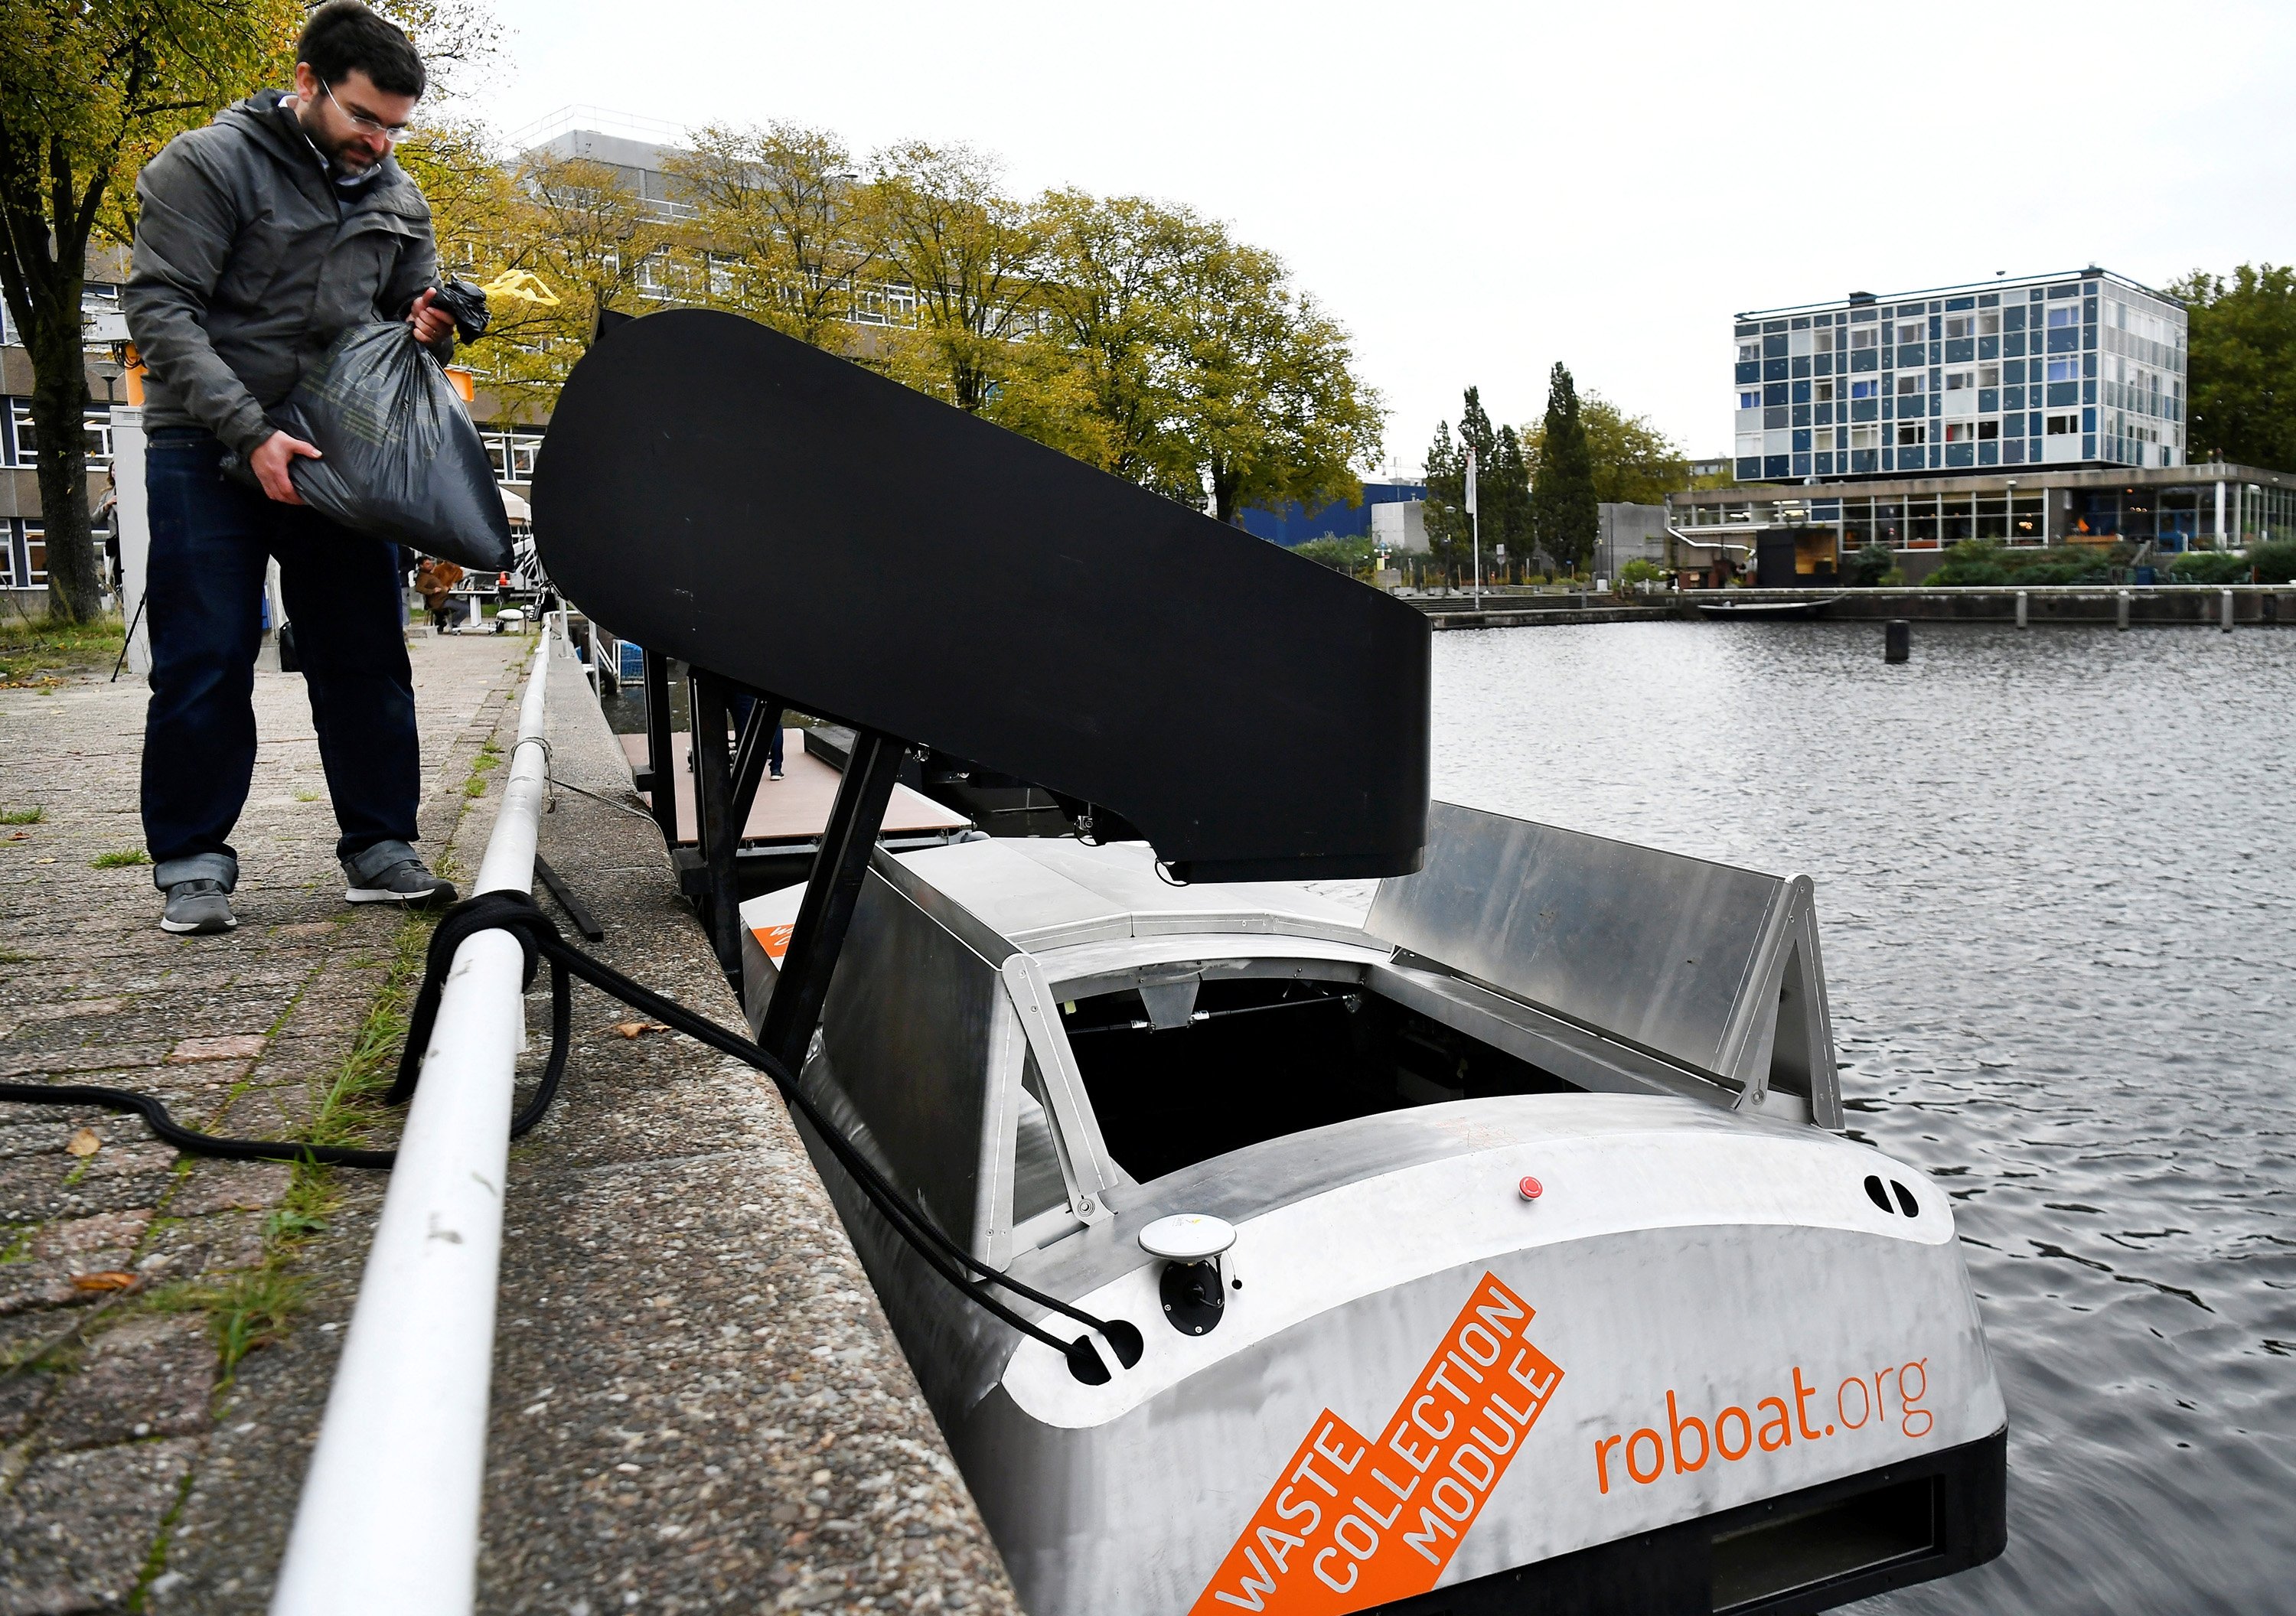 Researchers trial autonomous boats on Amsterdam's waterways in the Netherlands, Oct 27, 2021. (Reuters/Piroschka van de Wouw)